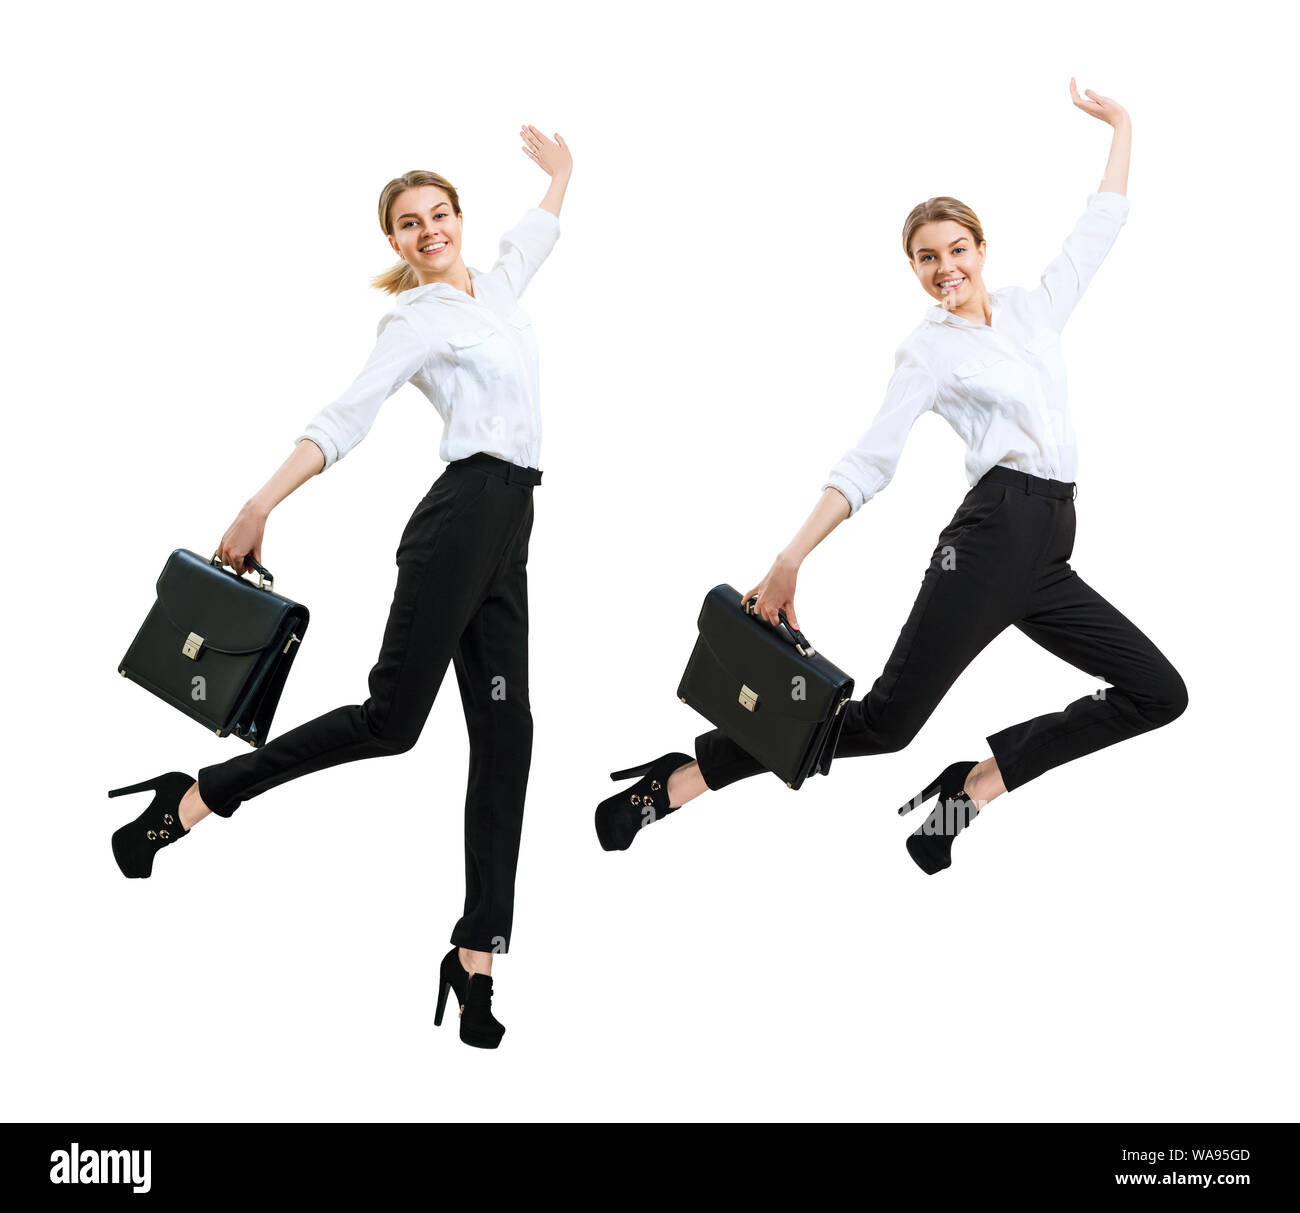 Collage de young business woman en saut d'usure formelle avec porte-documents. Isolé sur fond blanc. Banque D'Images